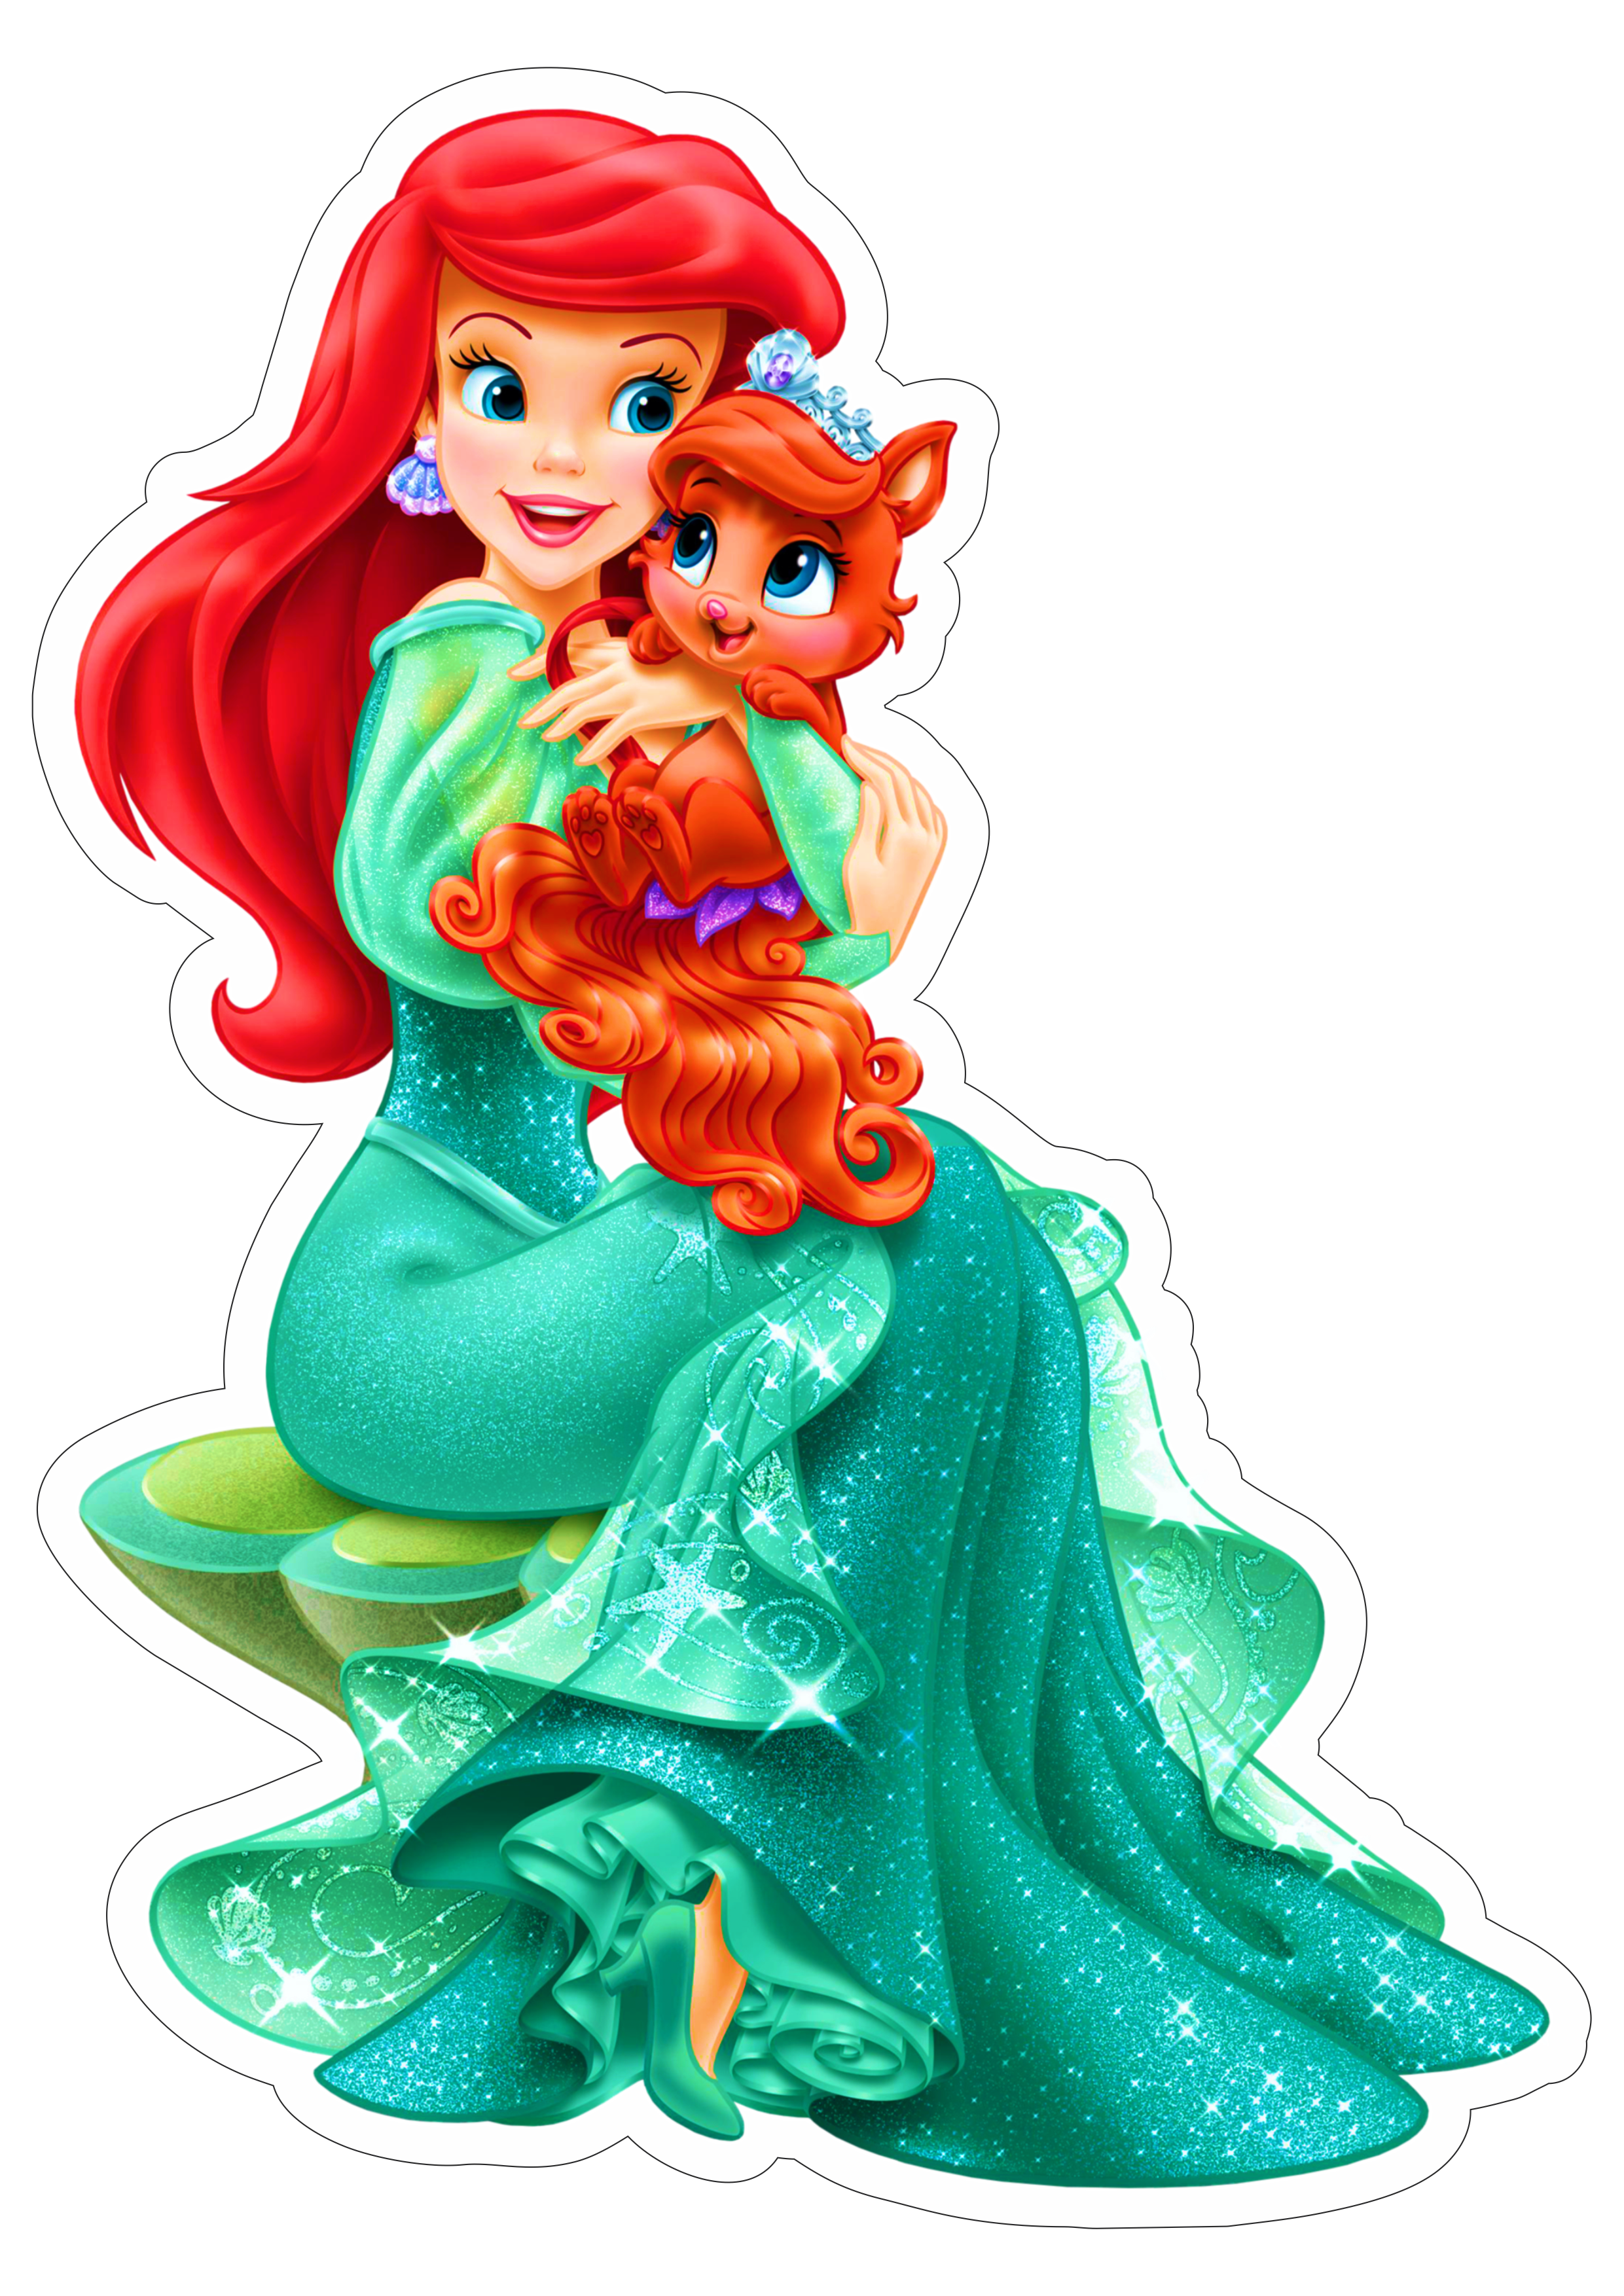 Ariel com cavalinho princesas disney imagem fundo transparente alta qualidade png